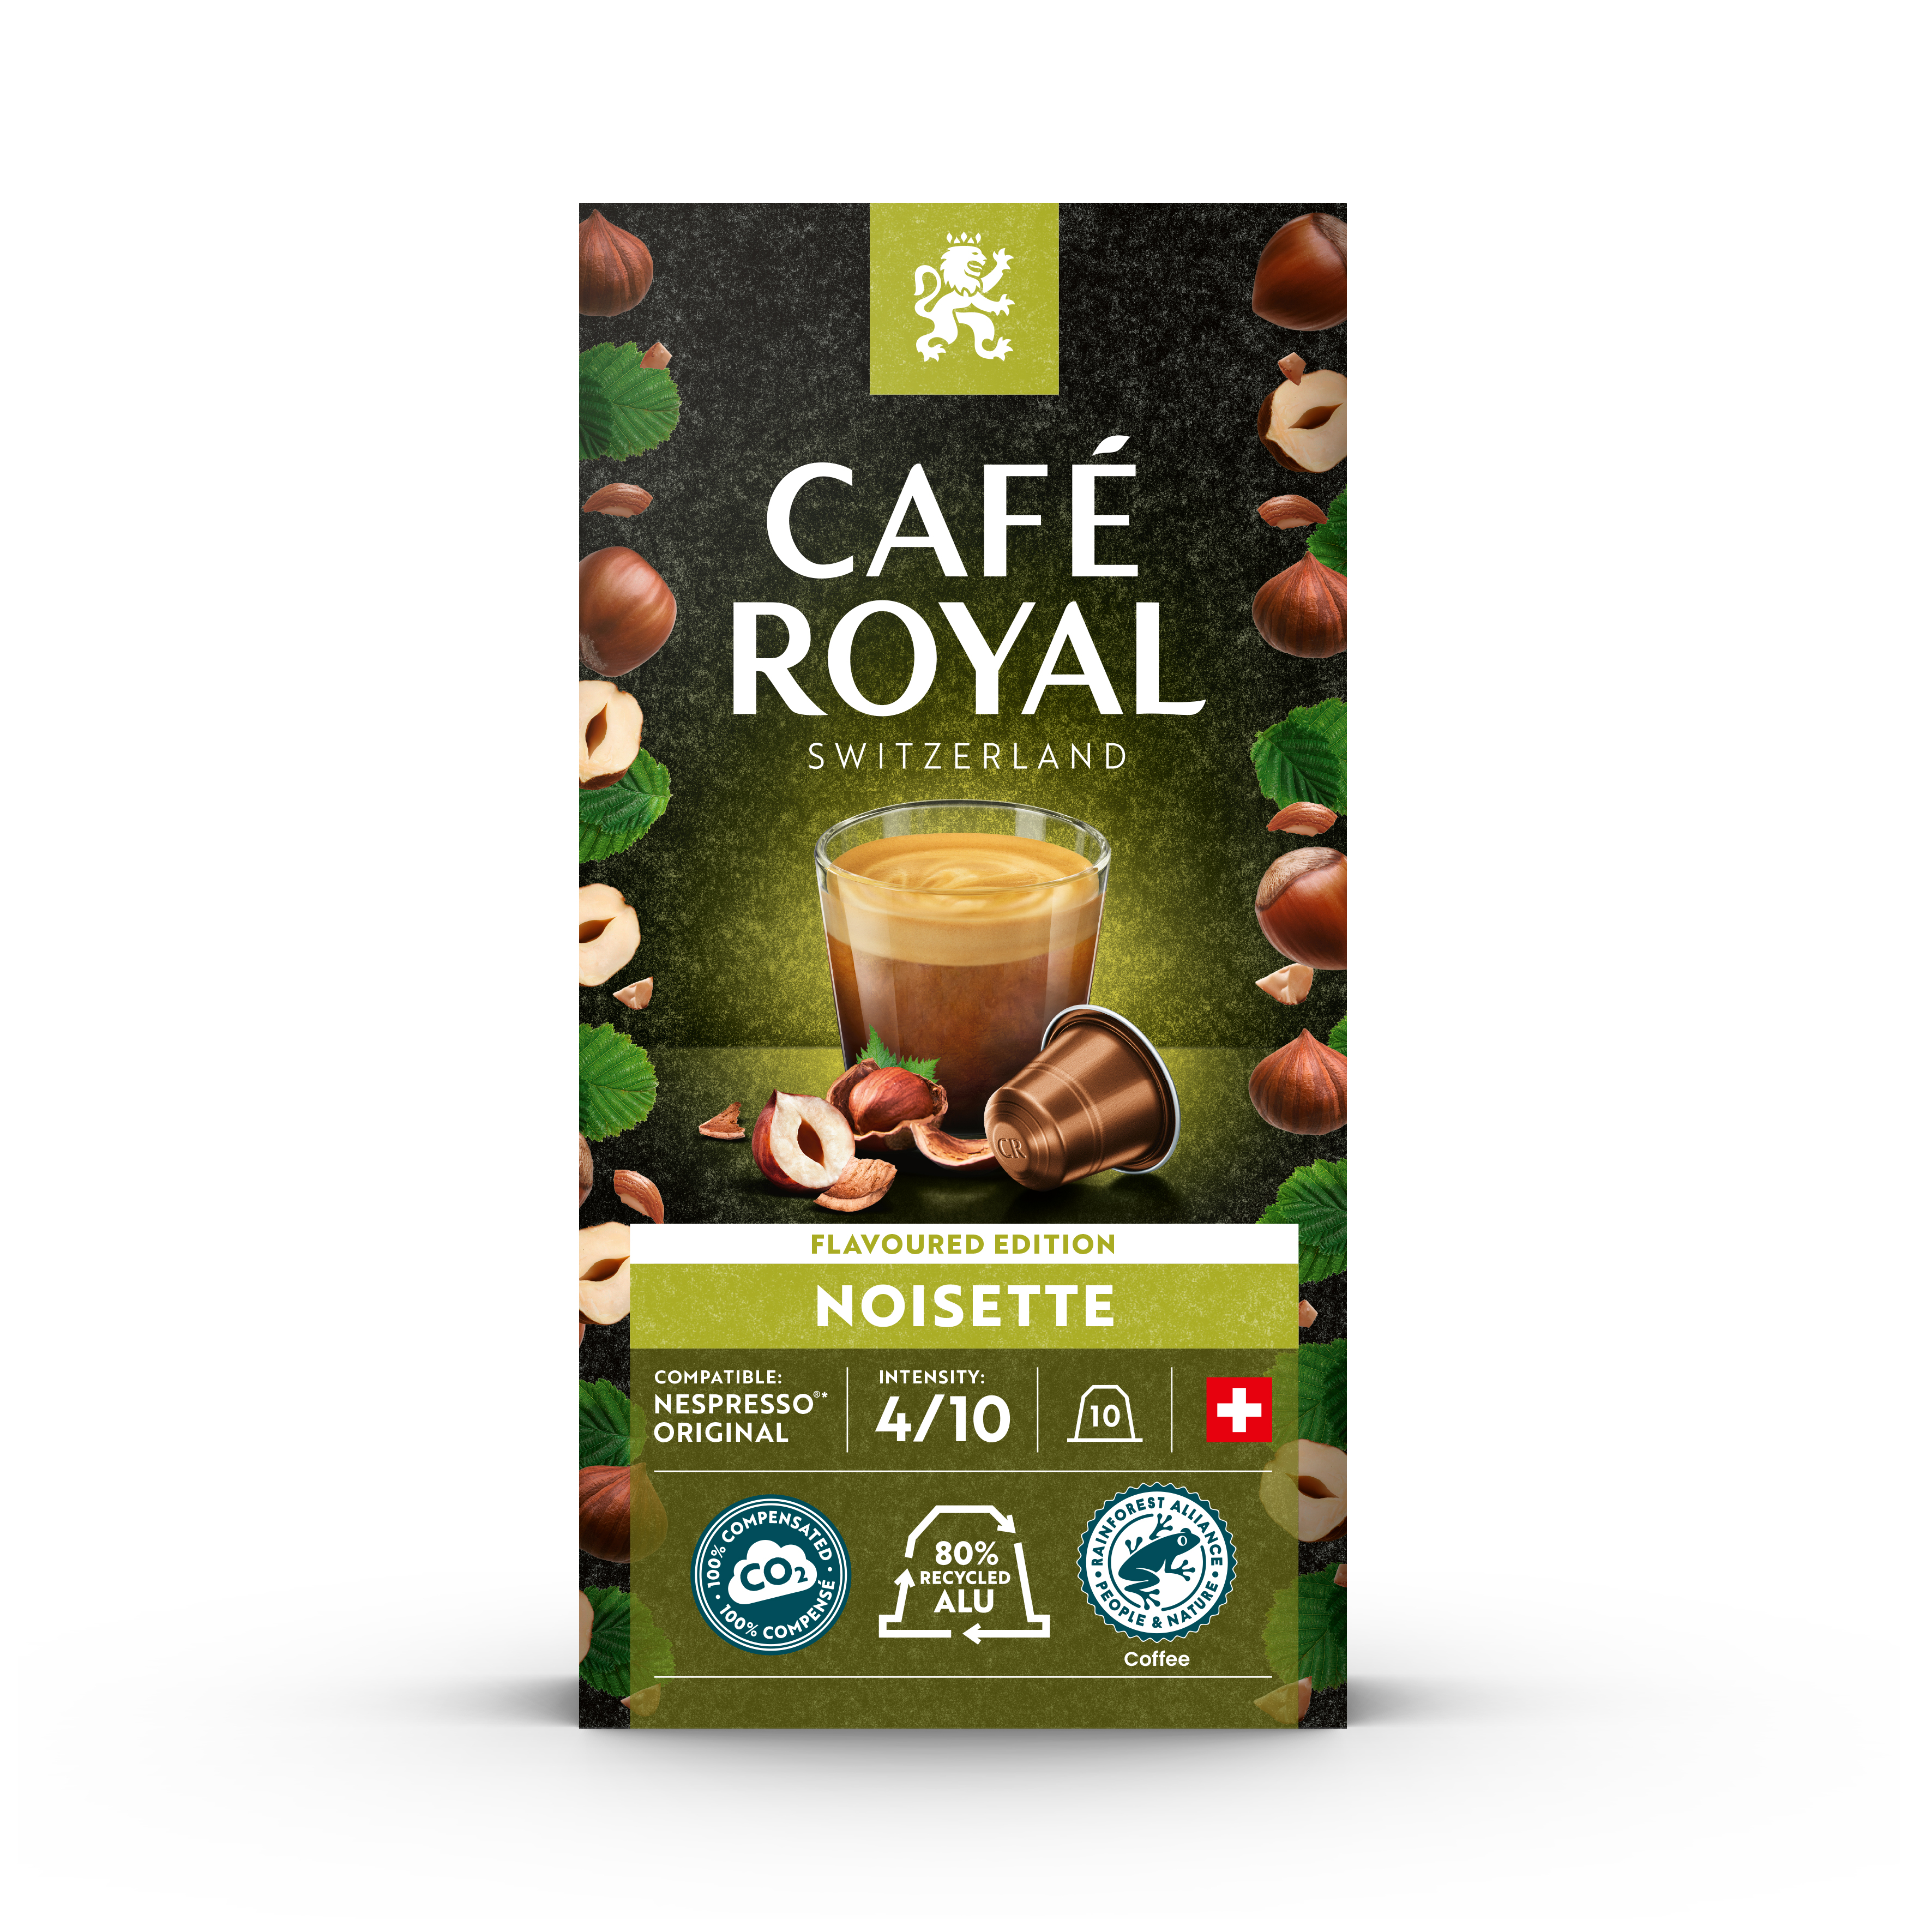 Café Royal arrive sur le marché français des capsules compatibles Nespresso